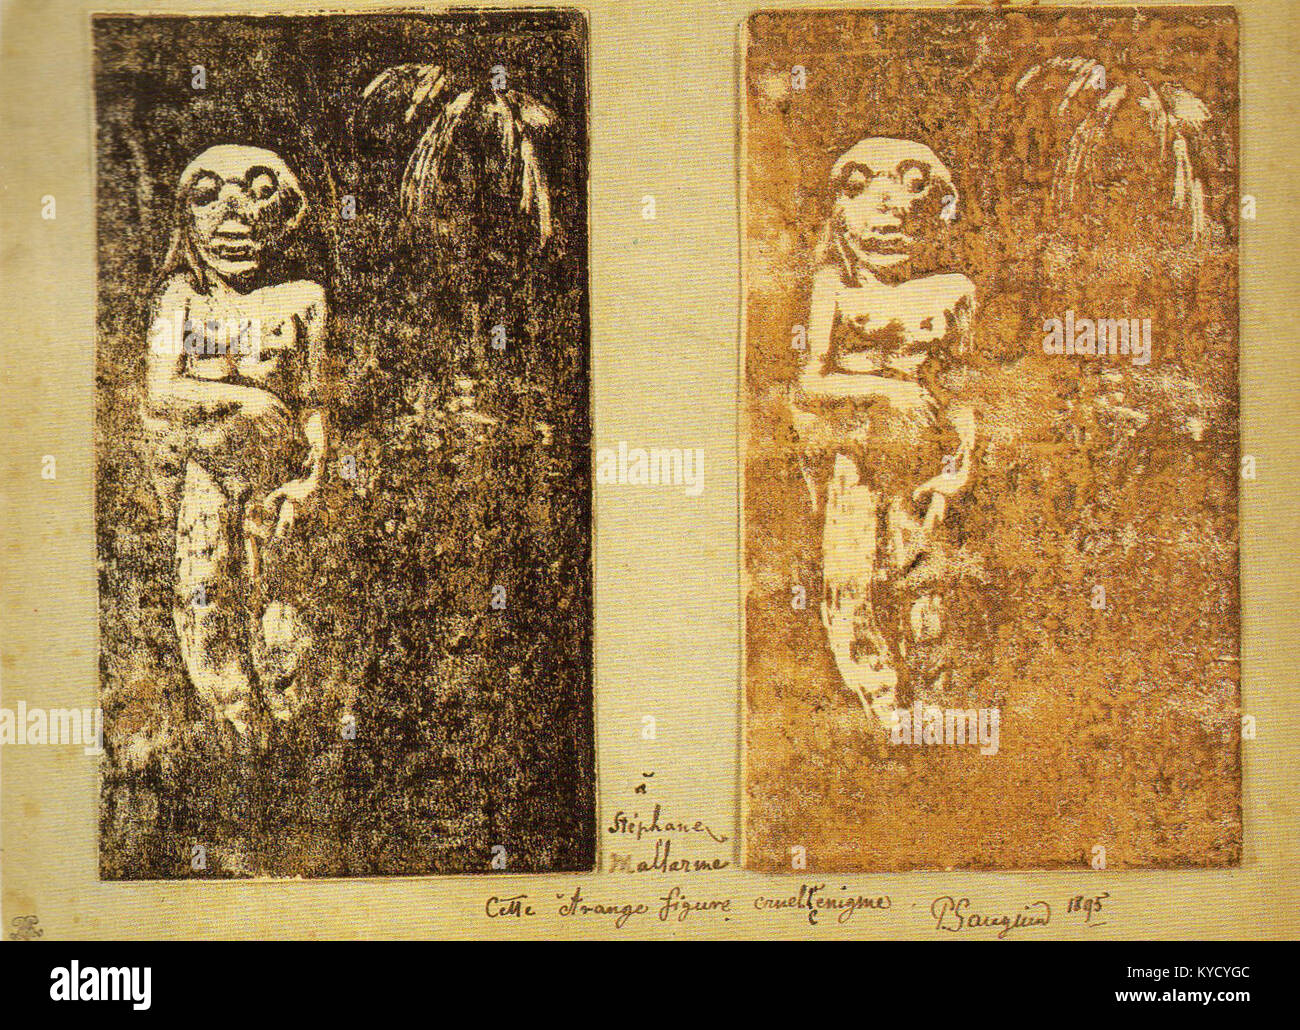 Paul Gauguin - Oviri presentation mount for Stéphane Mallarmé - AIC 1947.686.1 & 1947.686.2 Stock Photo